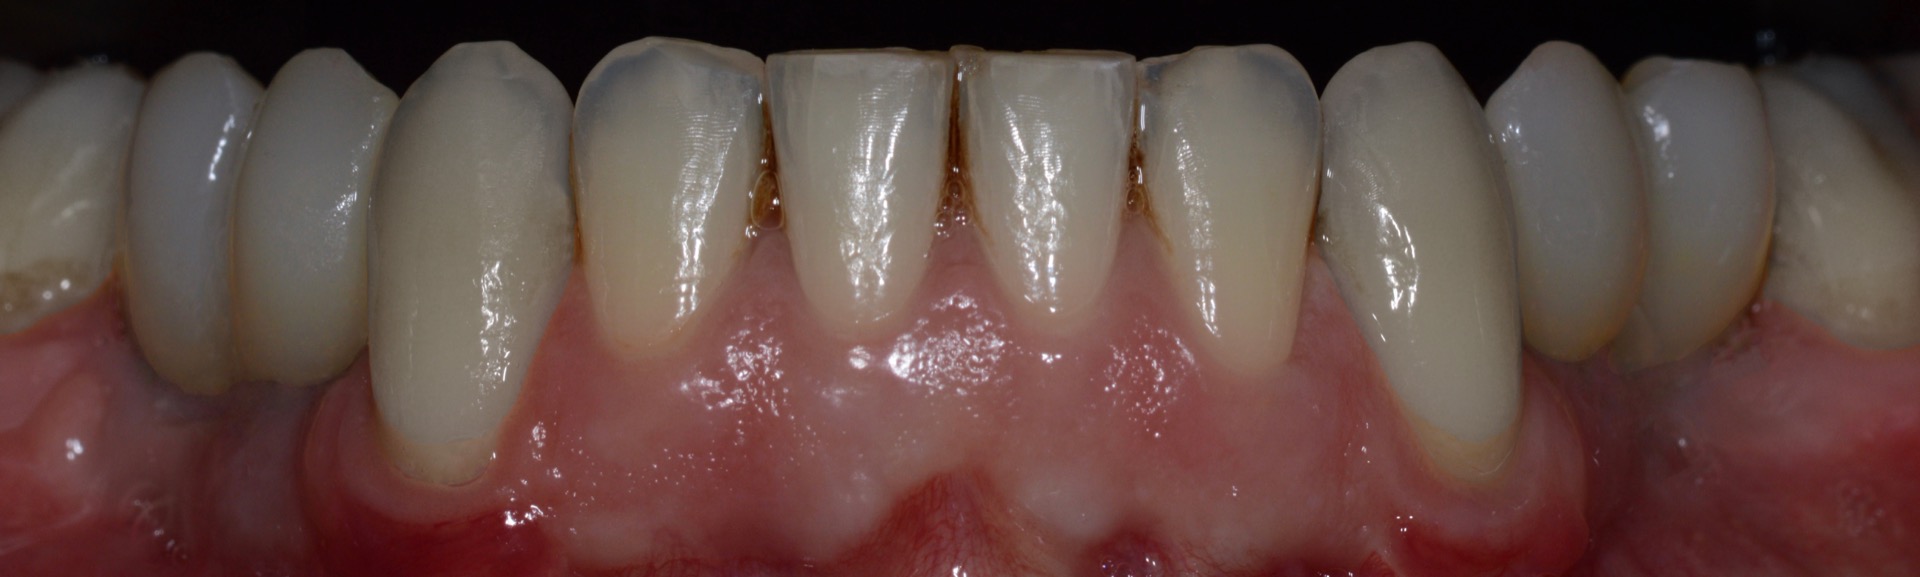 Τελική κατάσταση - Πρόσθια άποψη των αποκαταστάσεων της κάτω γνάθου, τοποθετημένες στο στόμα 